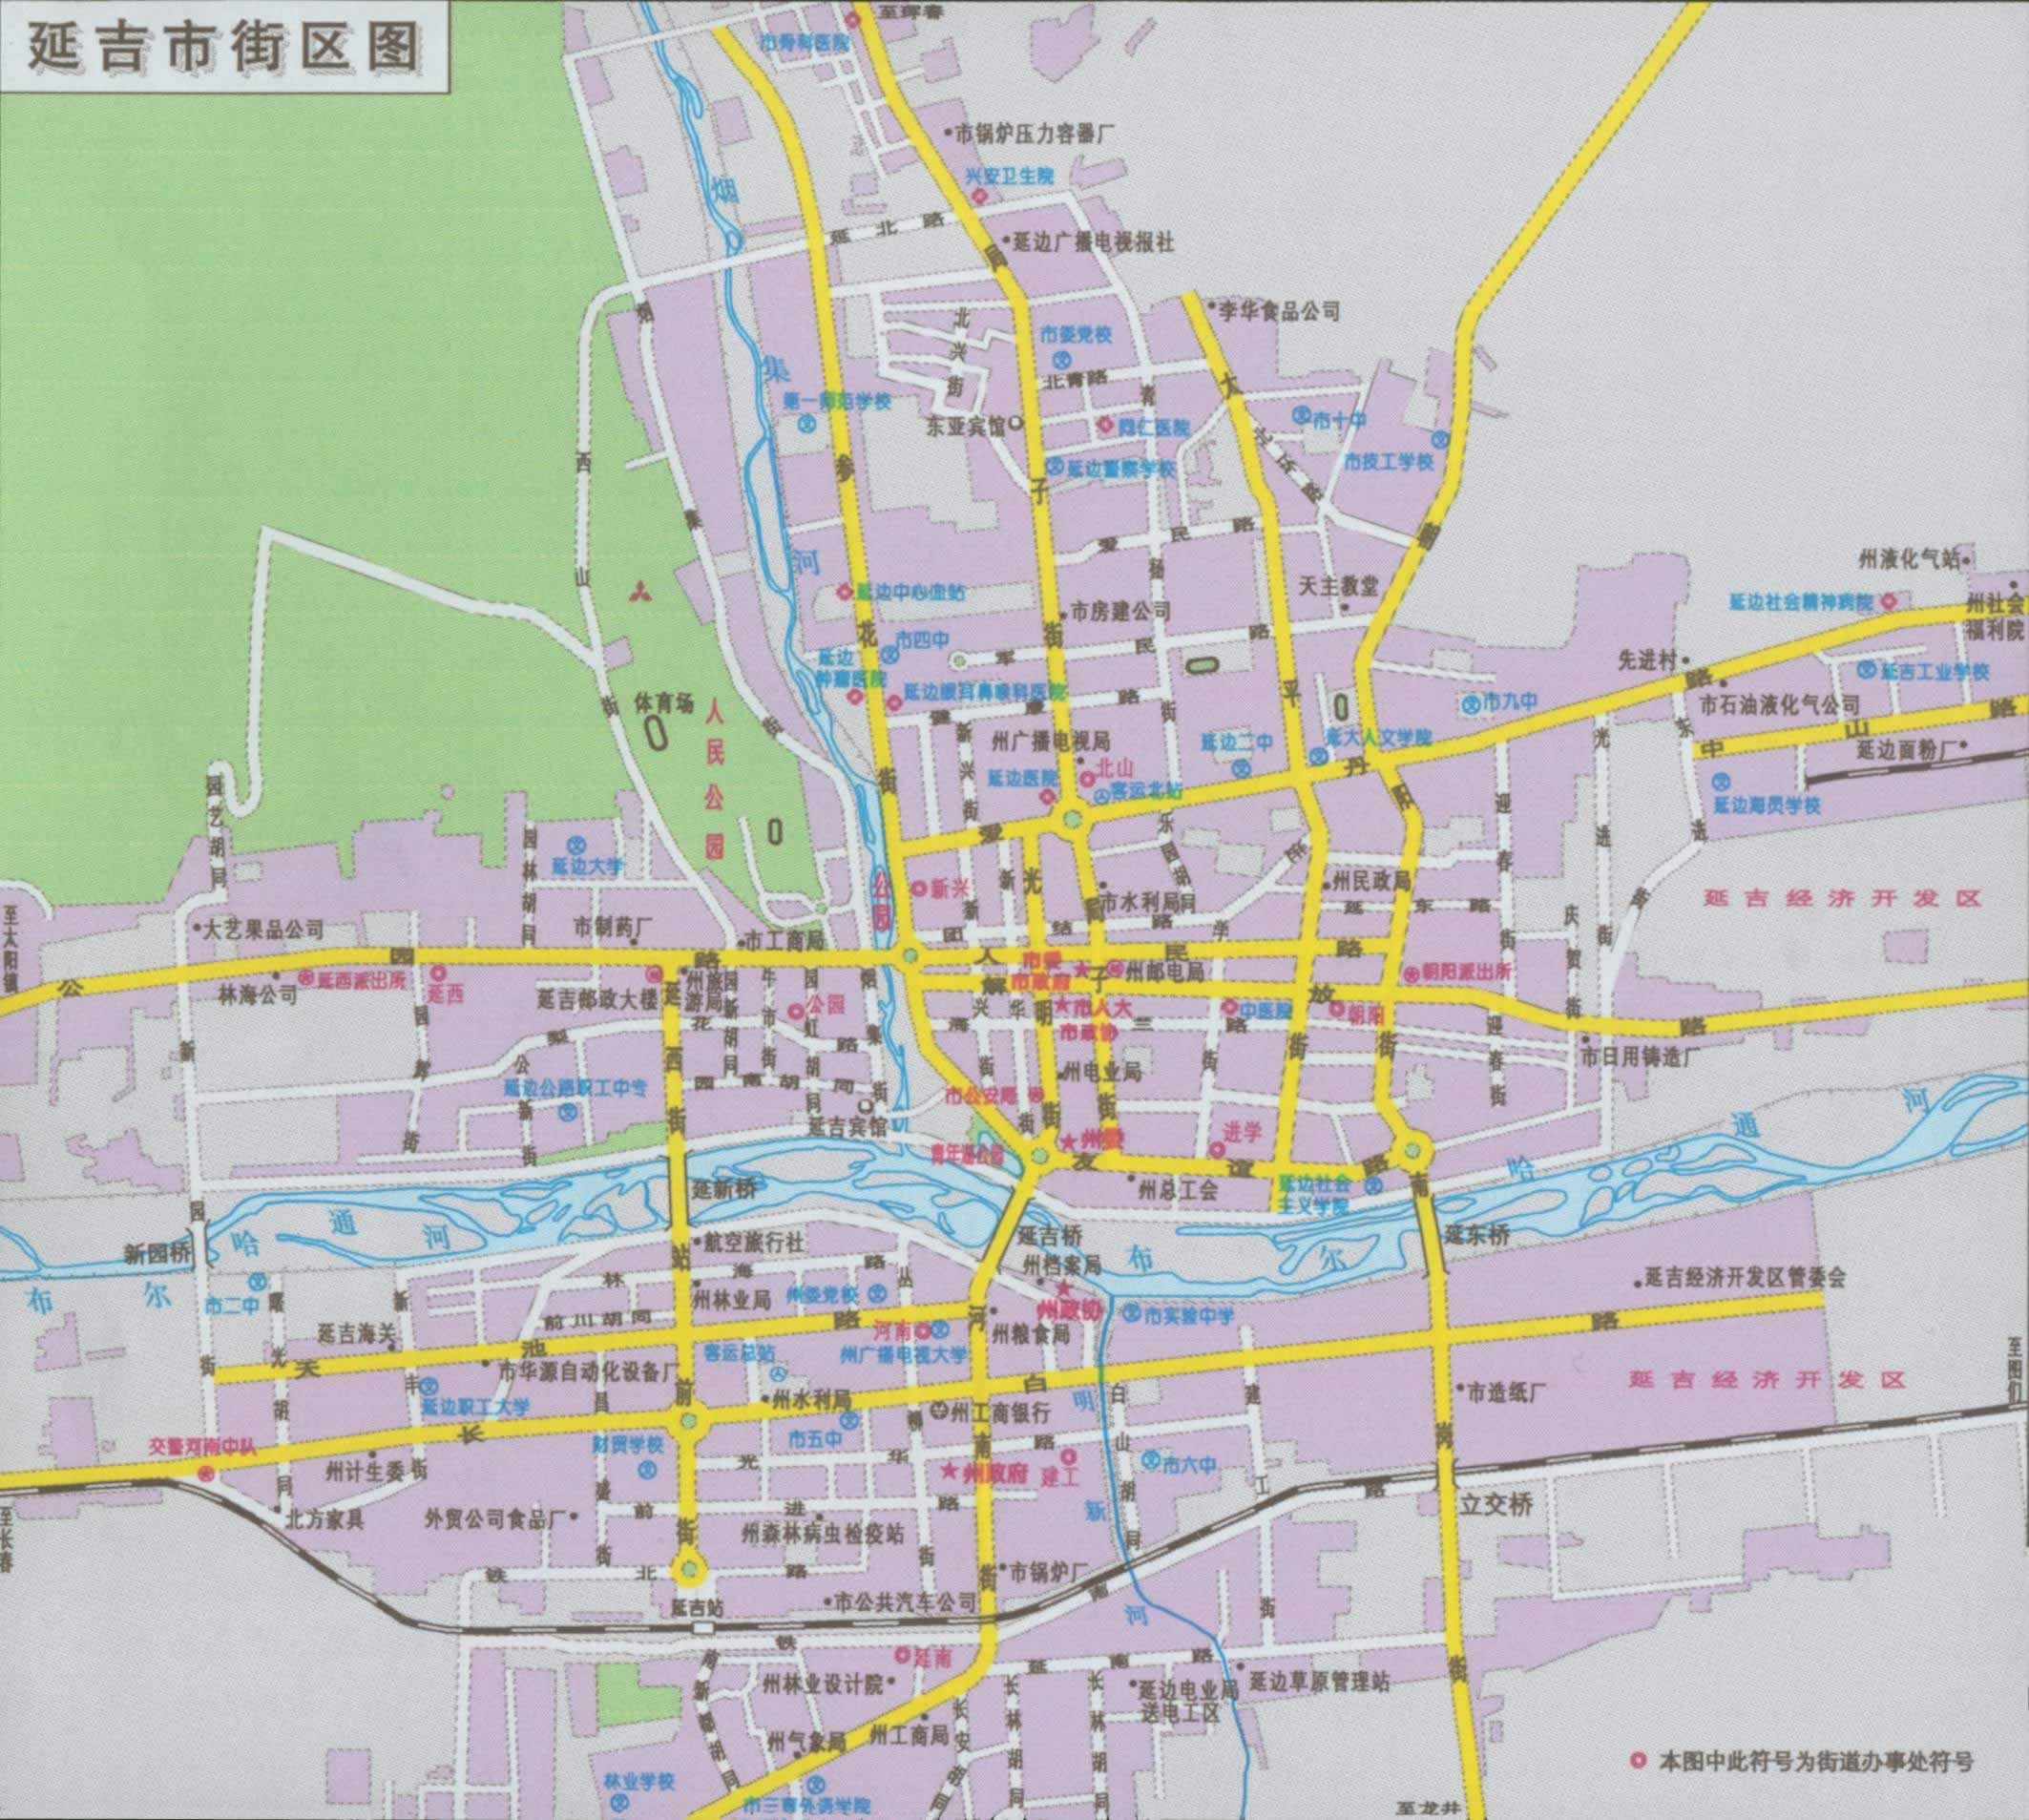 延吉市区地图|延吉市区地图全图高清版大图片|旅途风景图片网|www.visacits.com